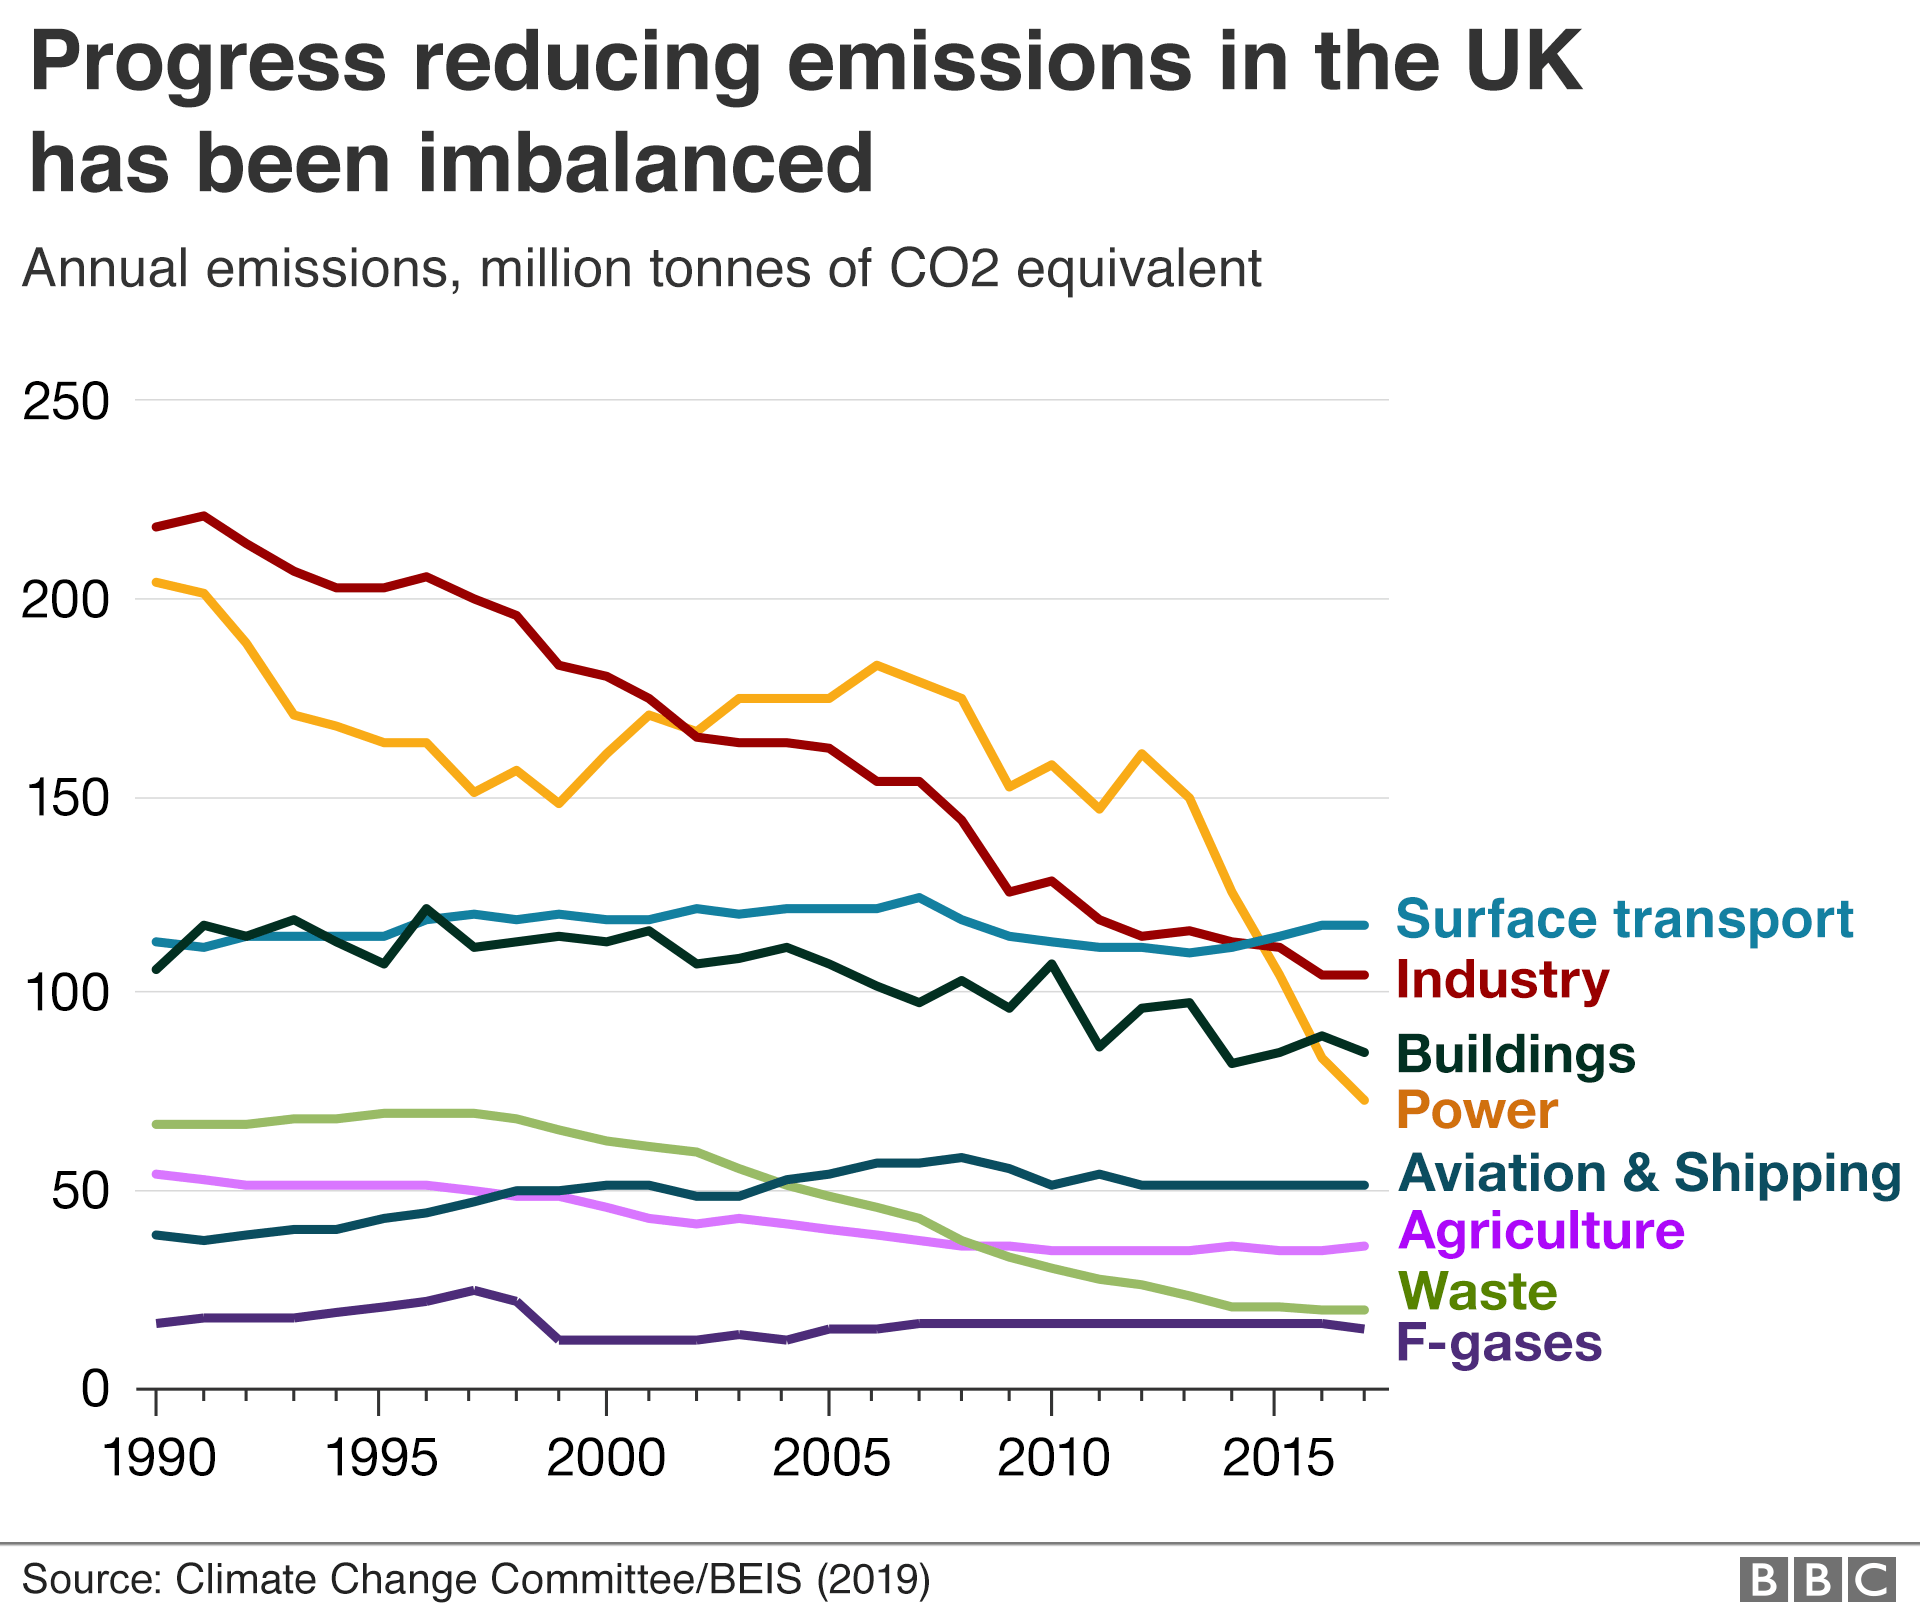 Диаграмма, показывающая прогресс в сокращении выбросов в различных секторах.